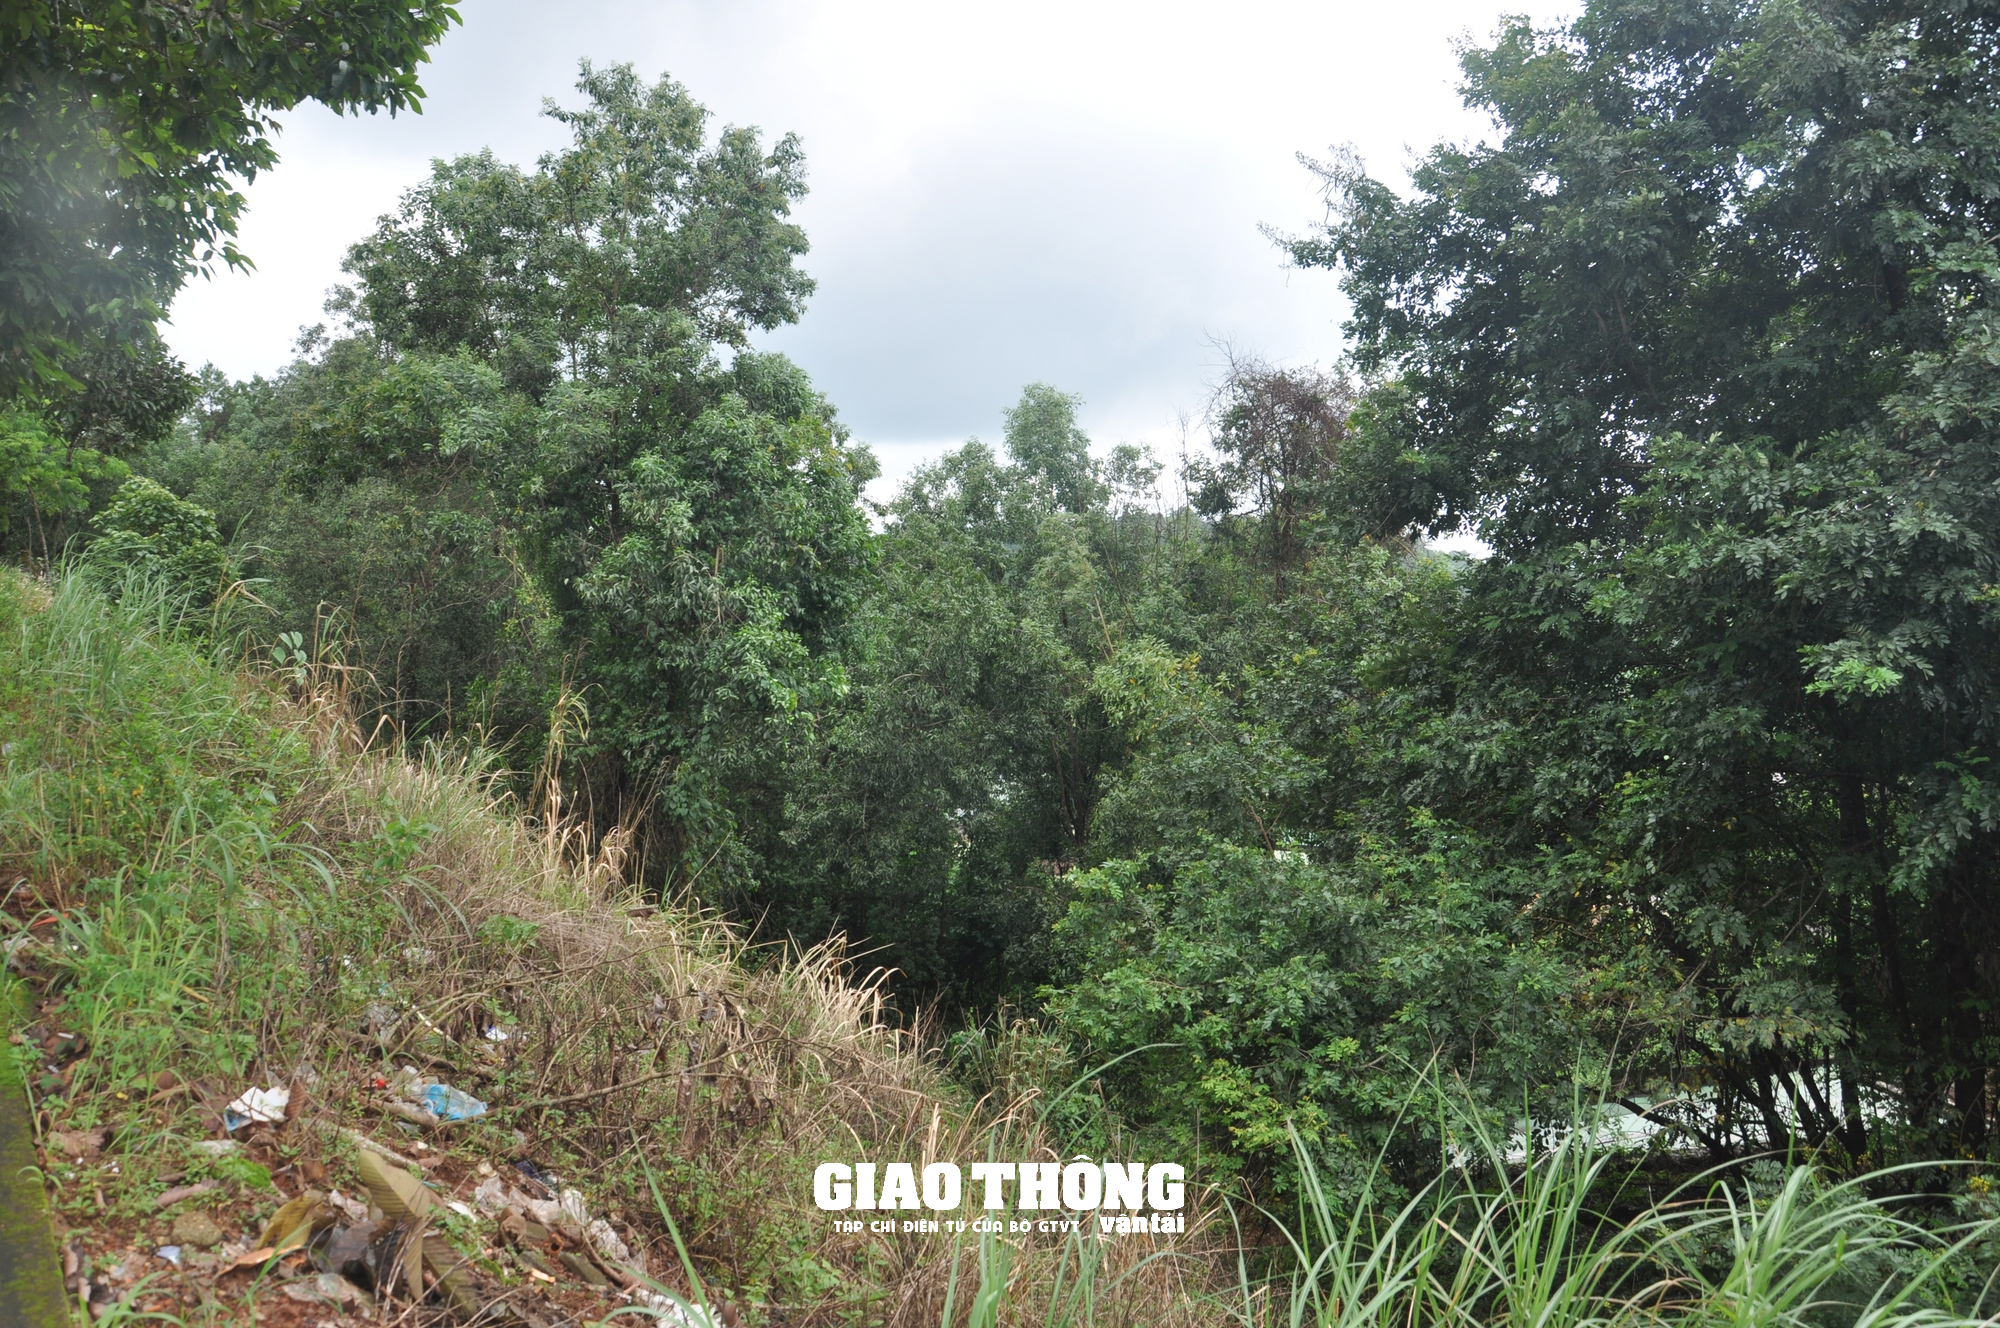 Cận cảnh sụt lún QL14 ở Đắk Nông: Vết sụt trượt liên tục mở rộng, nguy cơ mất đường - Ảnh 14.